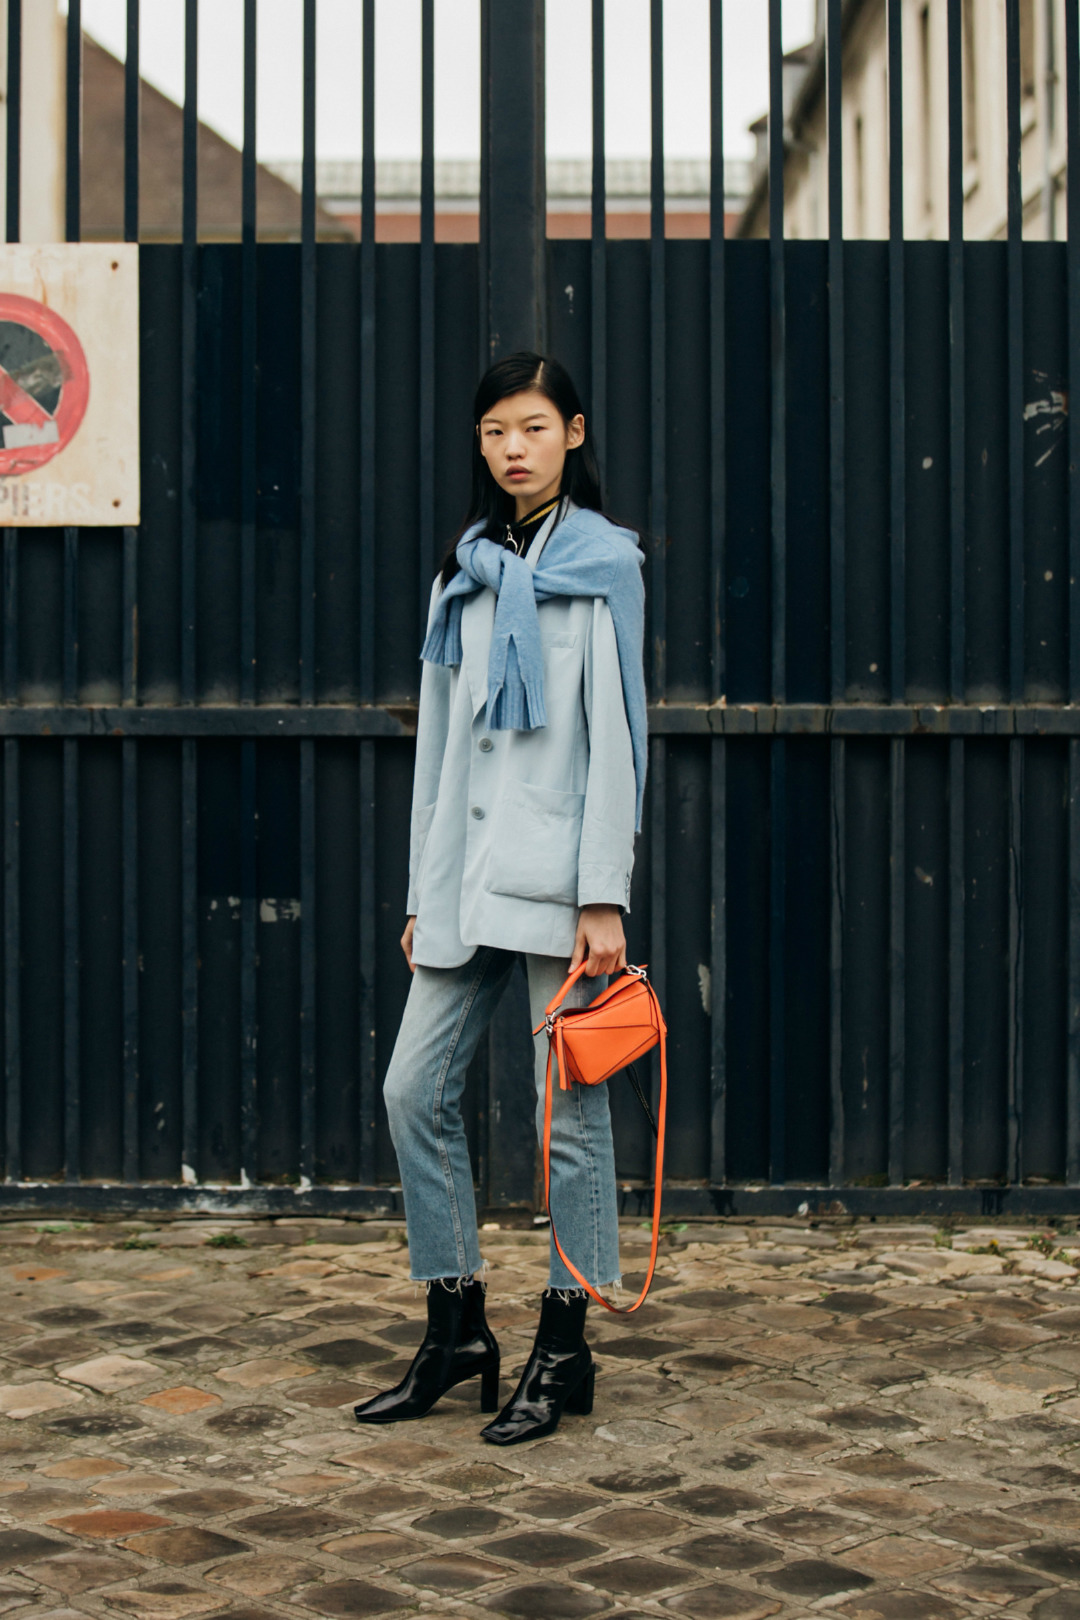 Sokak Stili: 2019-20 Sonbahar/Kış Paris Moda Haftası 8. Gün